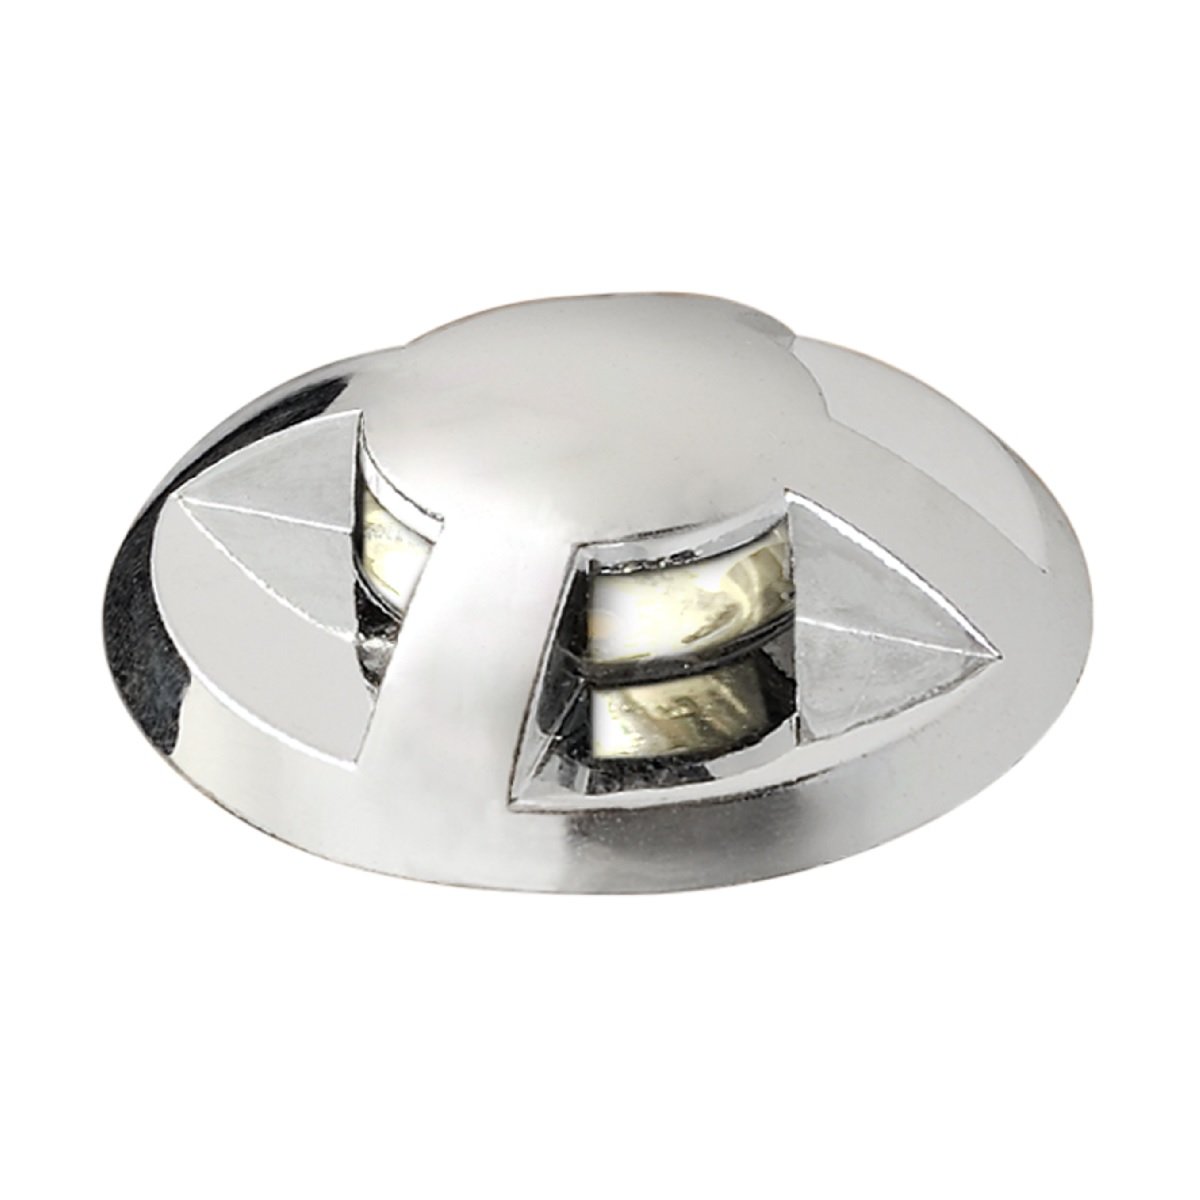 KONSTSMIDE No. 7481-000 Outdoor Mini LED G4 Boden Spot 3er-Erweiterungsset  mit Kappe --> Leuchten & Lampen online kaufen